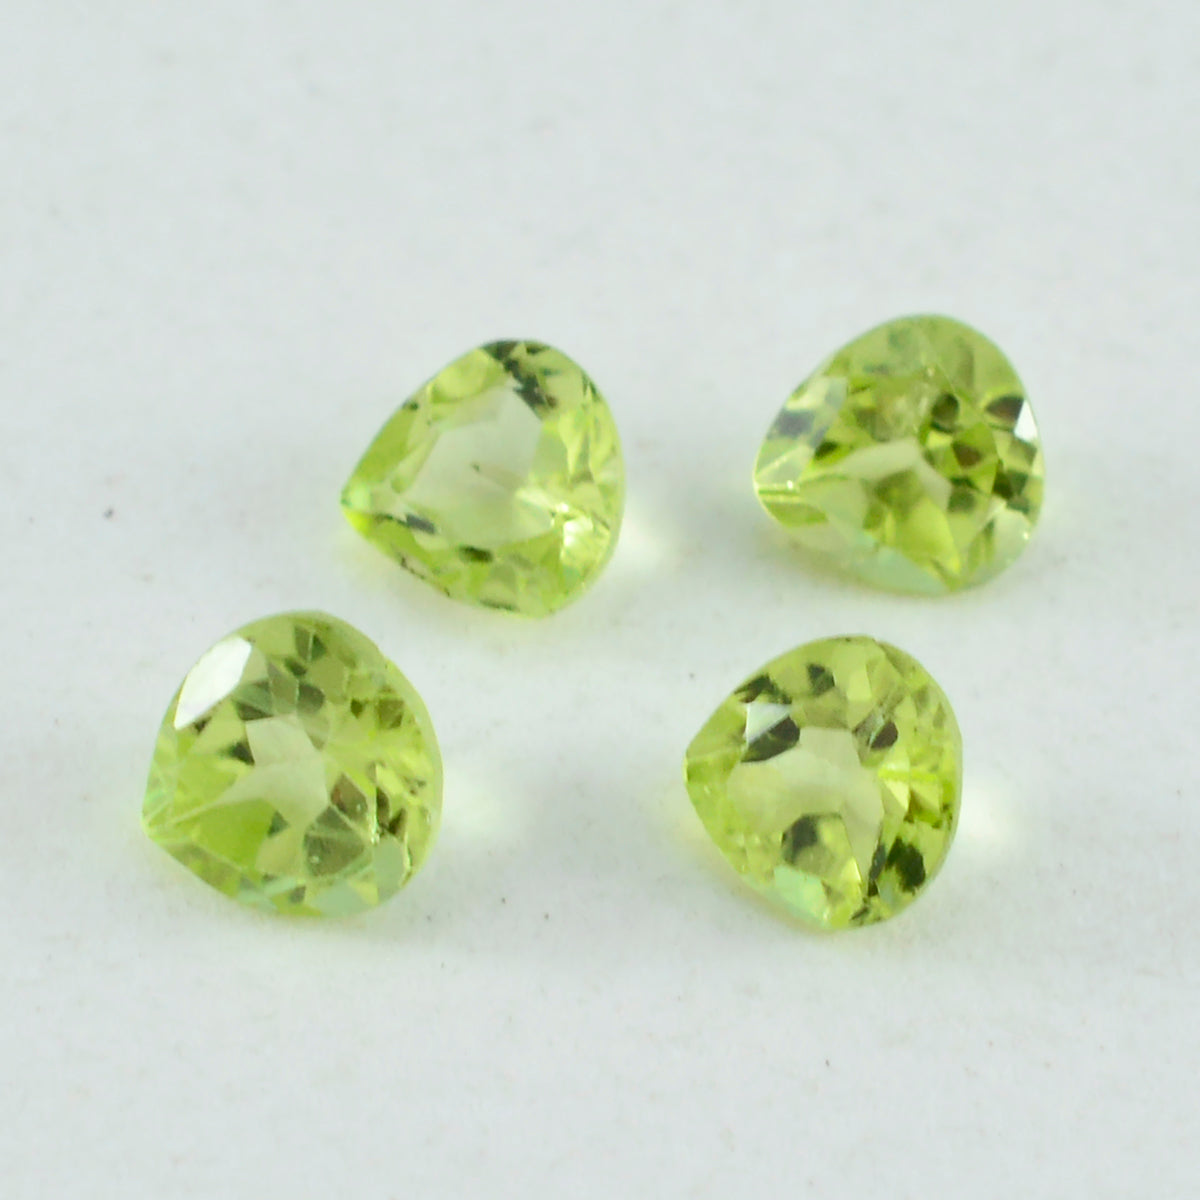 riyogems 1 pieza de peridoto verde genuino facetado 6x6 mm forma de corazón piedra preciosa de increíble calidad